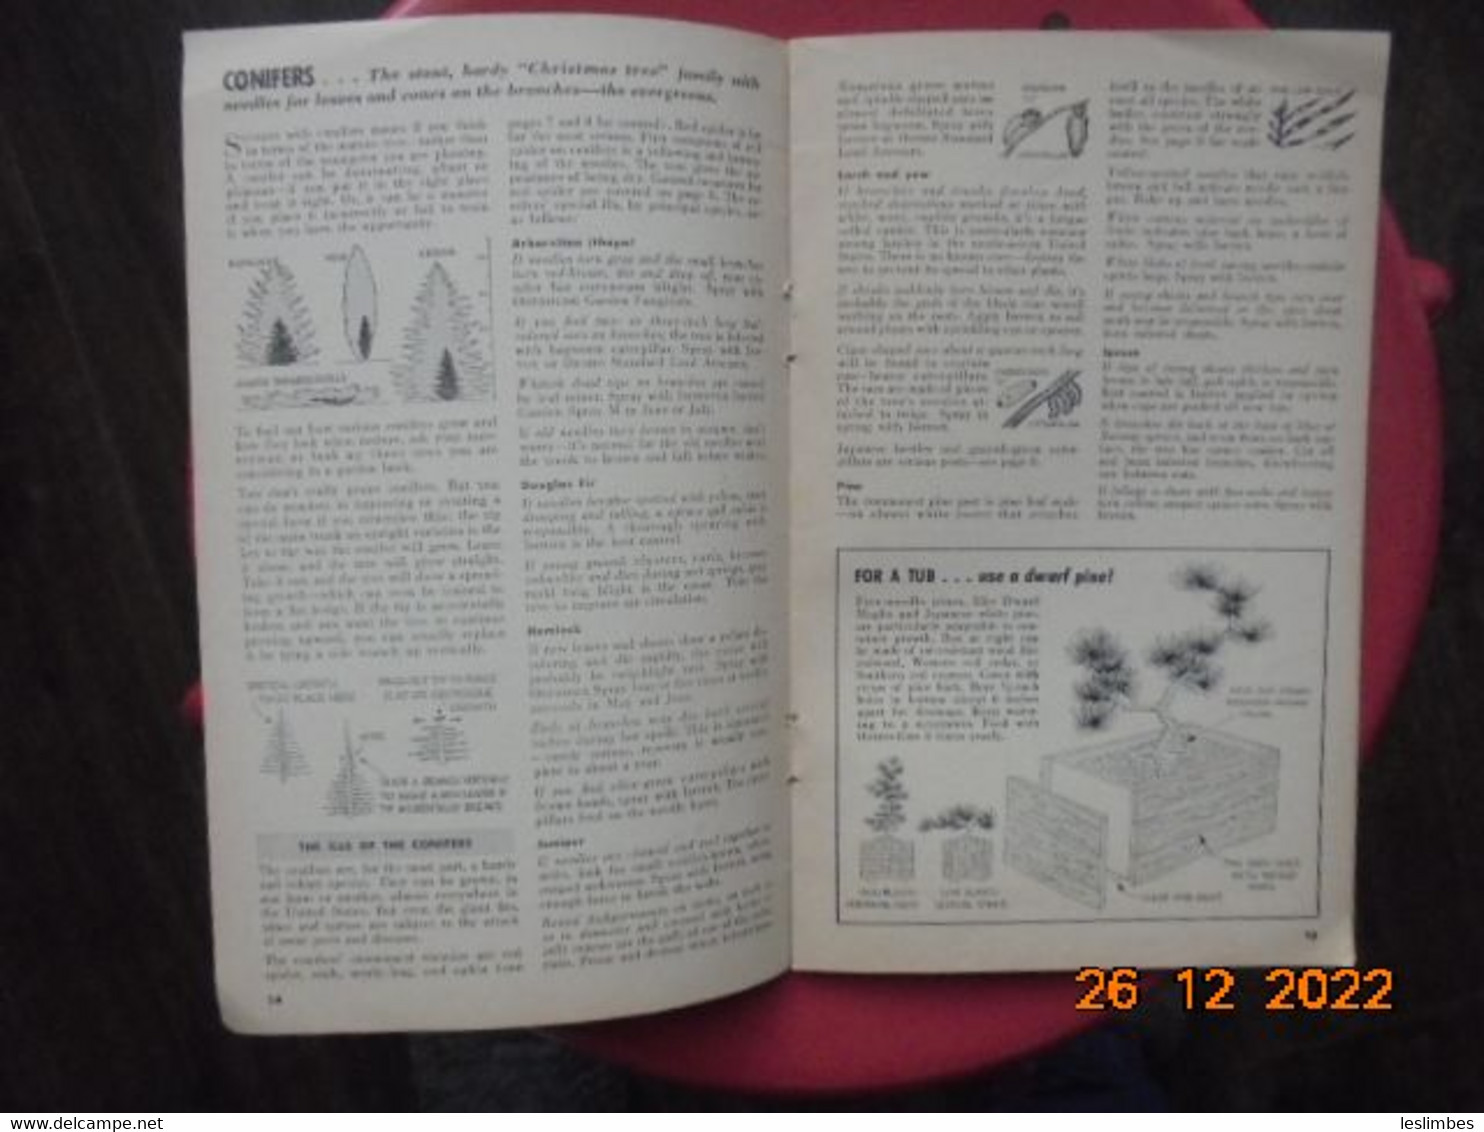 Ortho Garden Book (1956) - Heimwerken